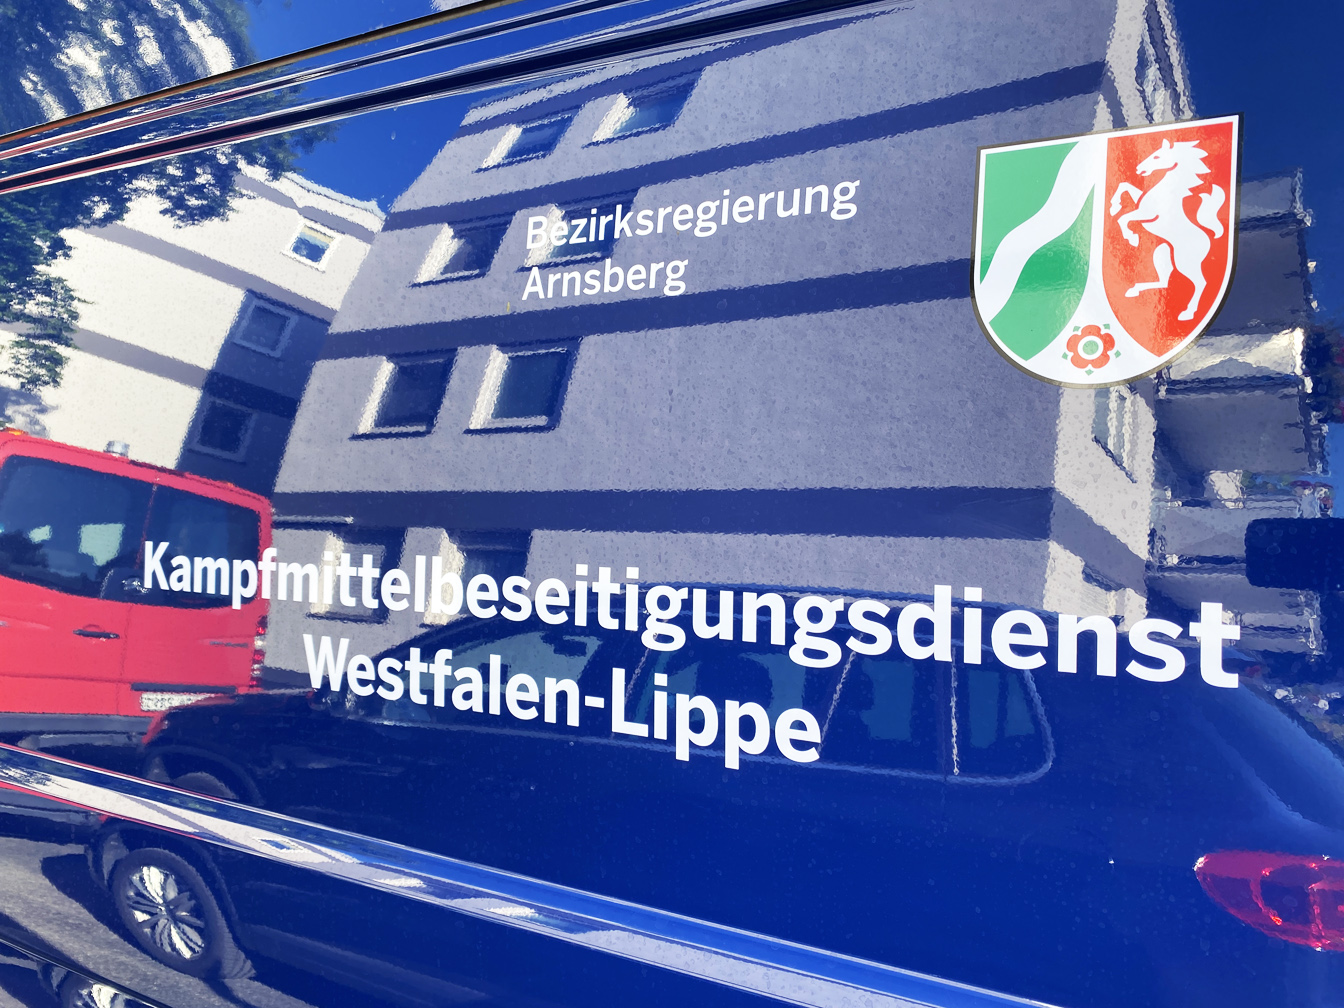 Aufschrift "Kampfmittelbeseitigungsdienst Bezirksregierung Arnsberg" auf einem Transporter